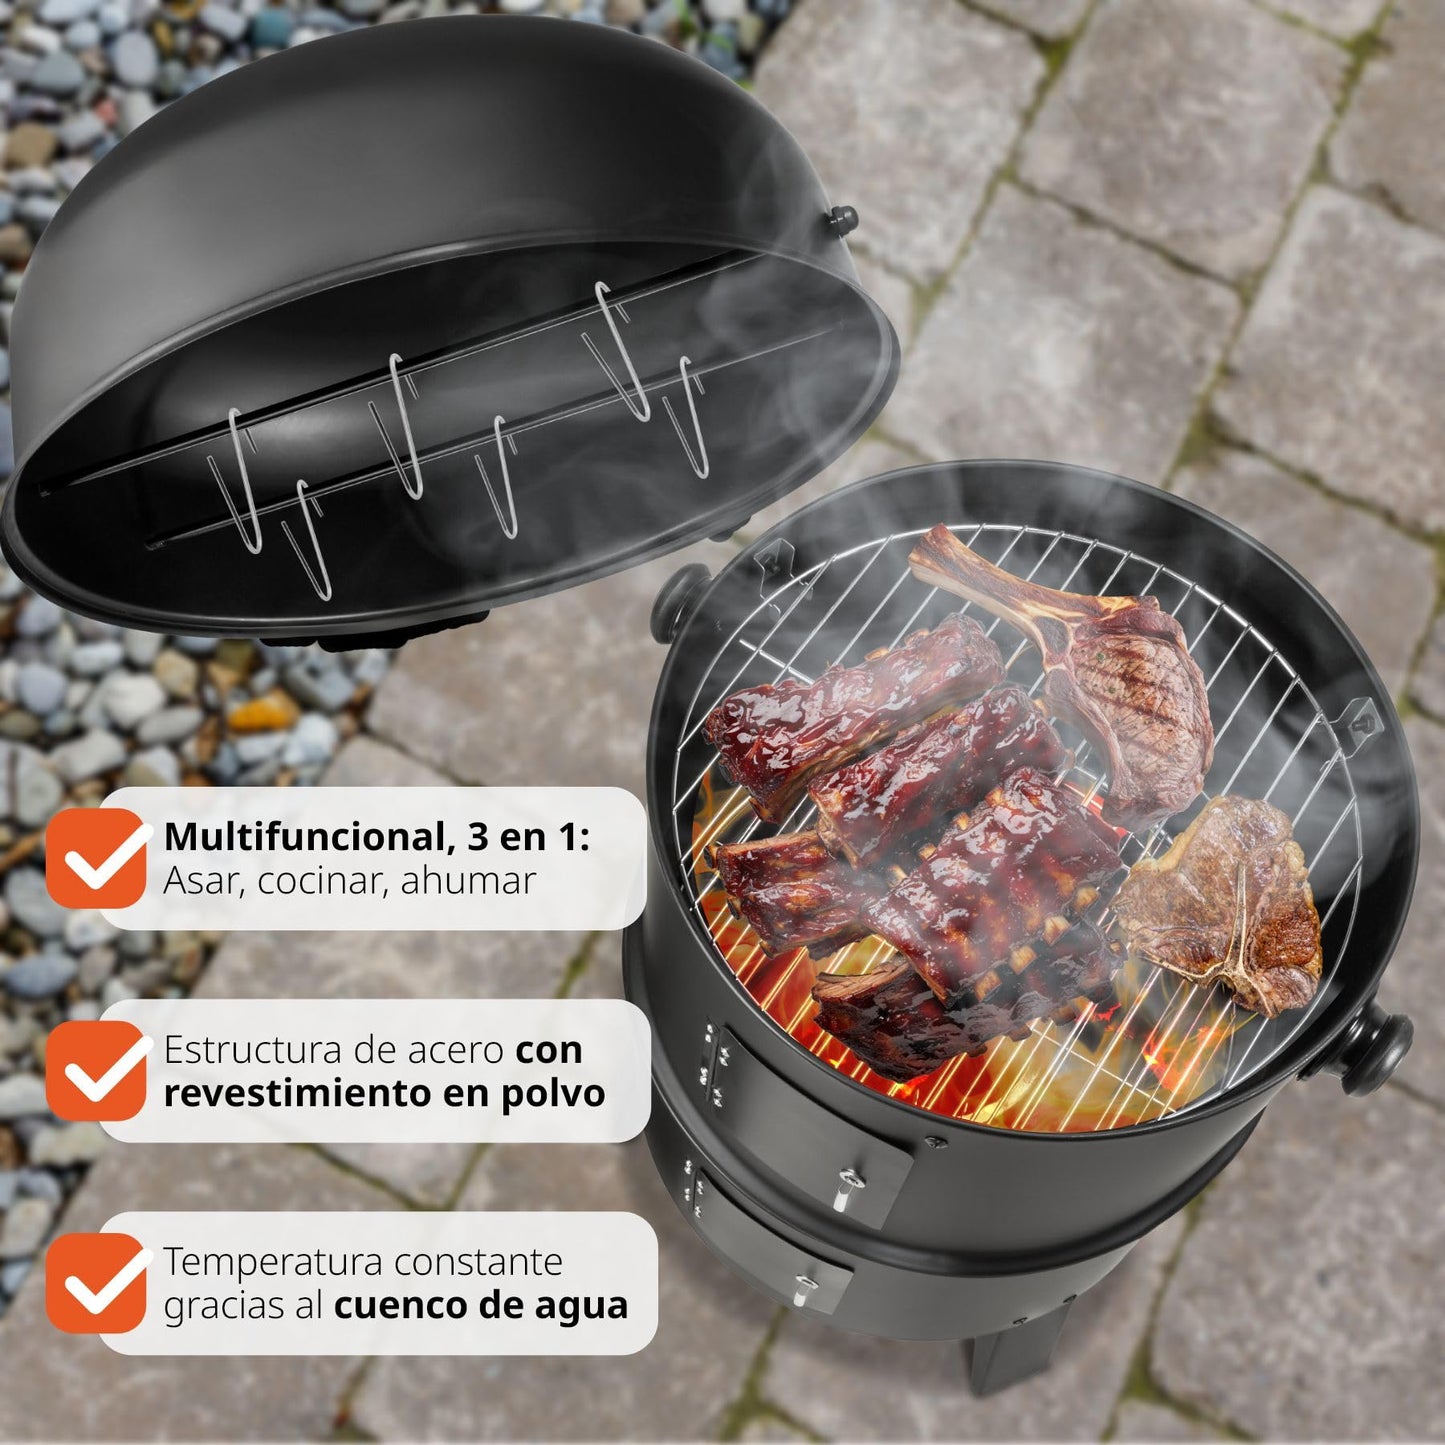 TecTake Barbacoa Barbecue Grill con Carbón Vegetal Parrilla Fumador - varios modelos - (BBQ charcoal grill | no. 401172)